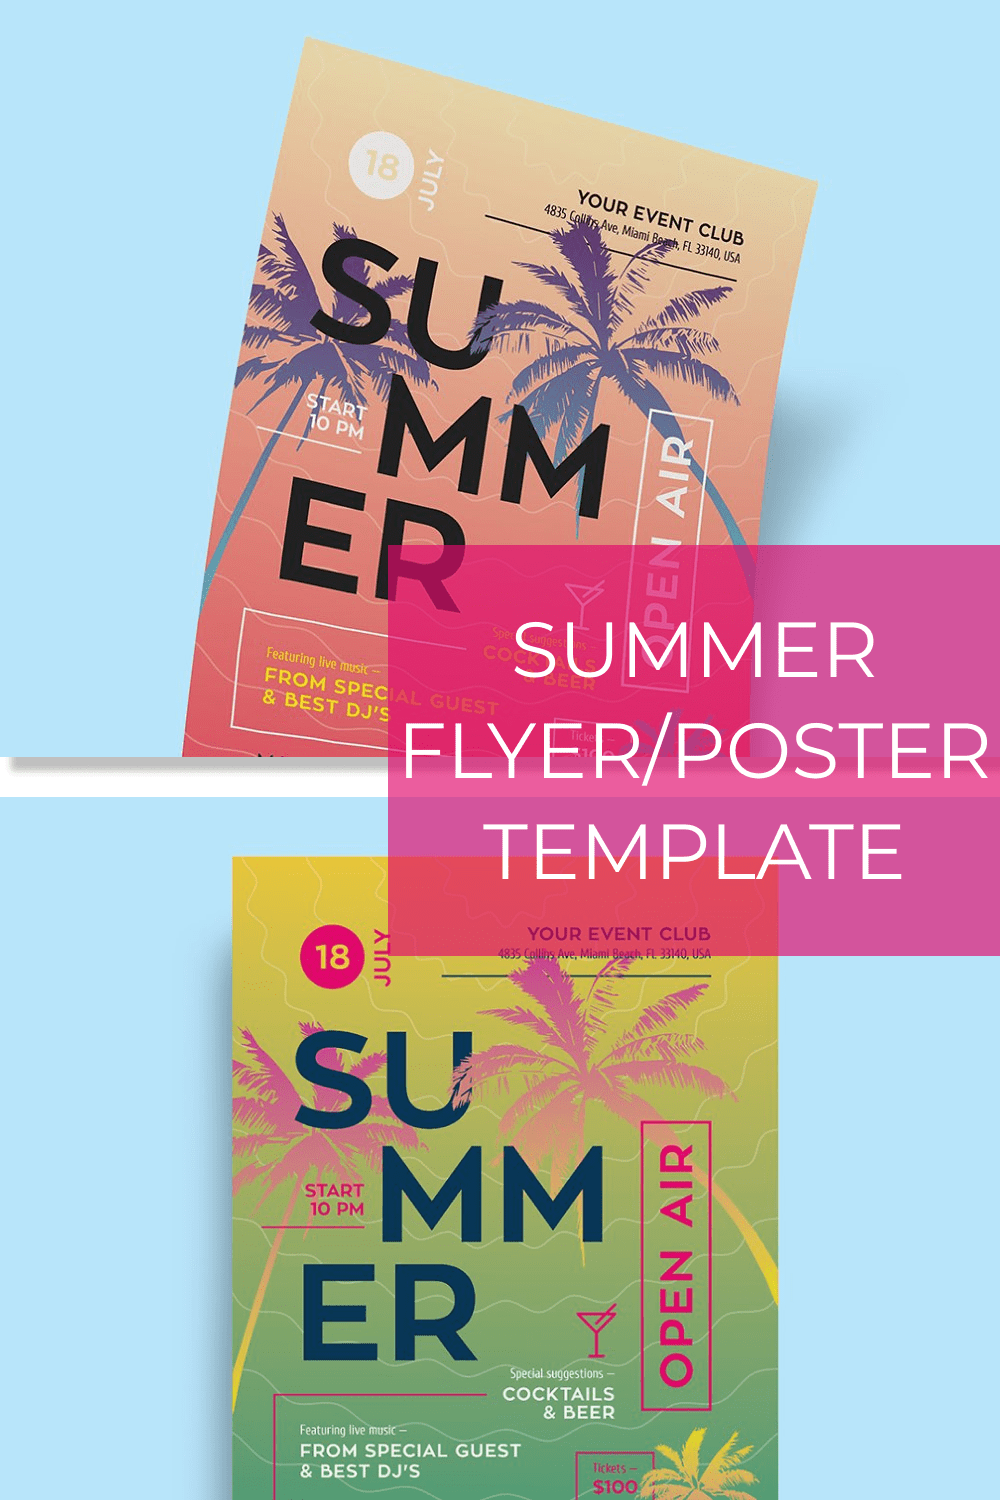 Summer FlyerPoster Template pinterest image.